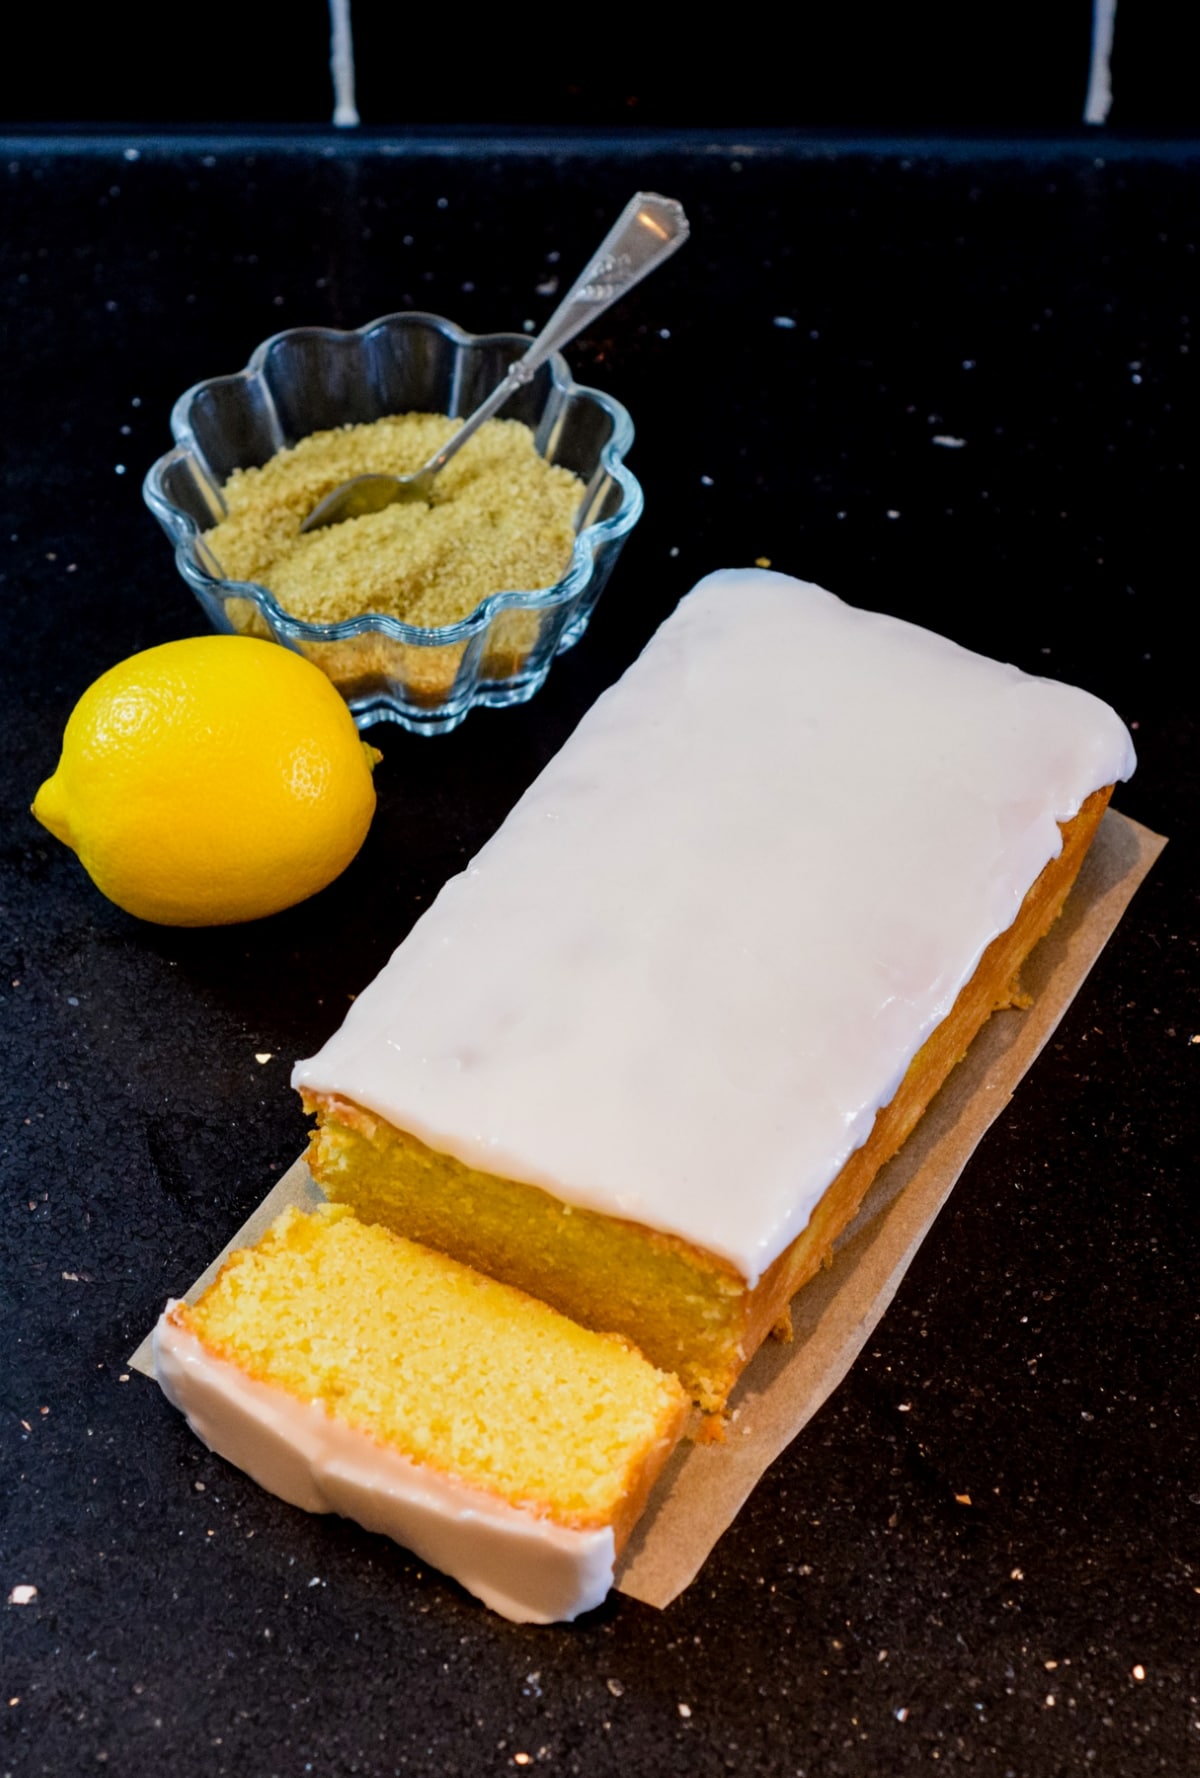 Starbucks copycat iced lemon loaf pound cake without buttermilk